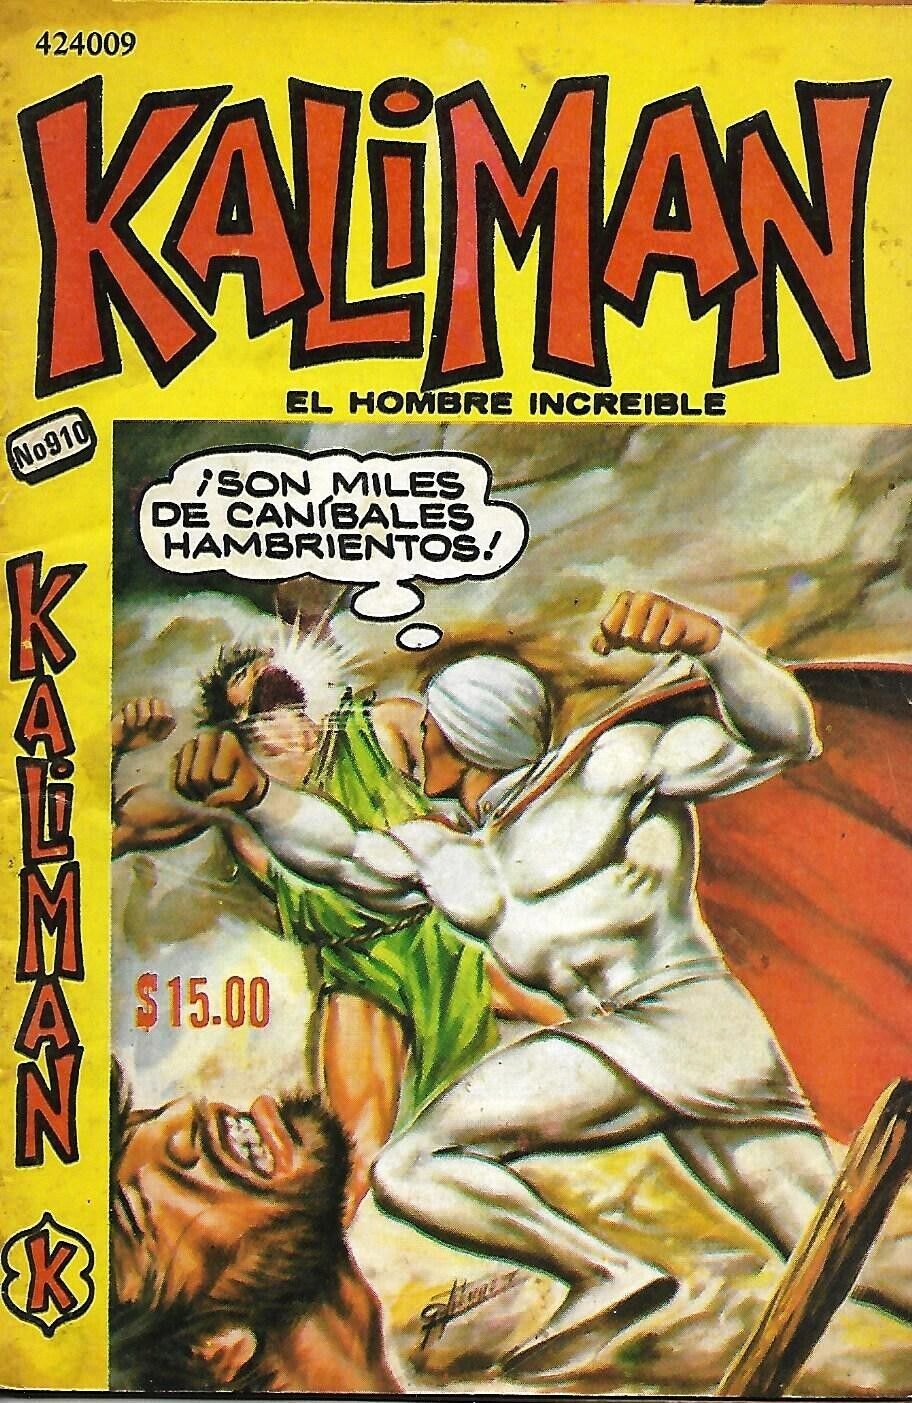 Kaliman El Hombre Increible #910 - Mayo 6, 1983 - Mexico